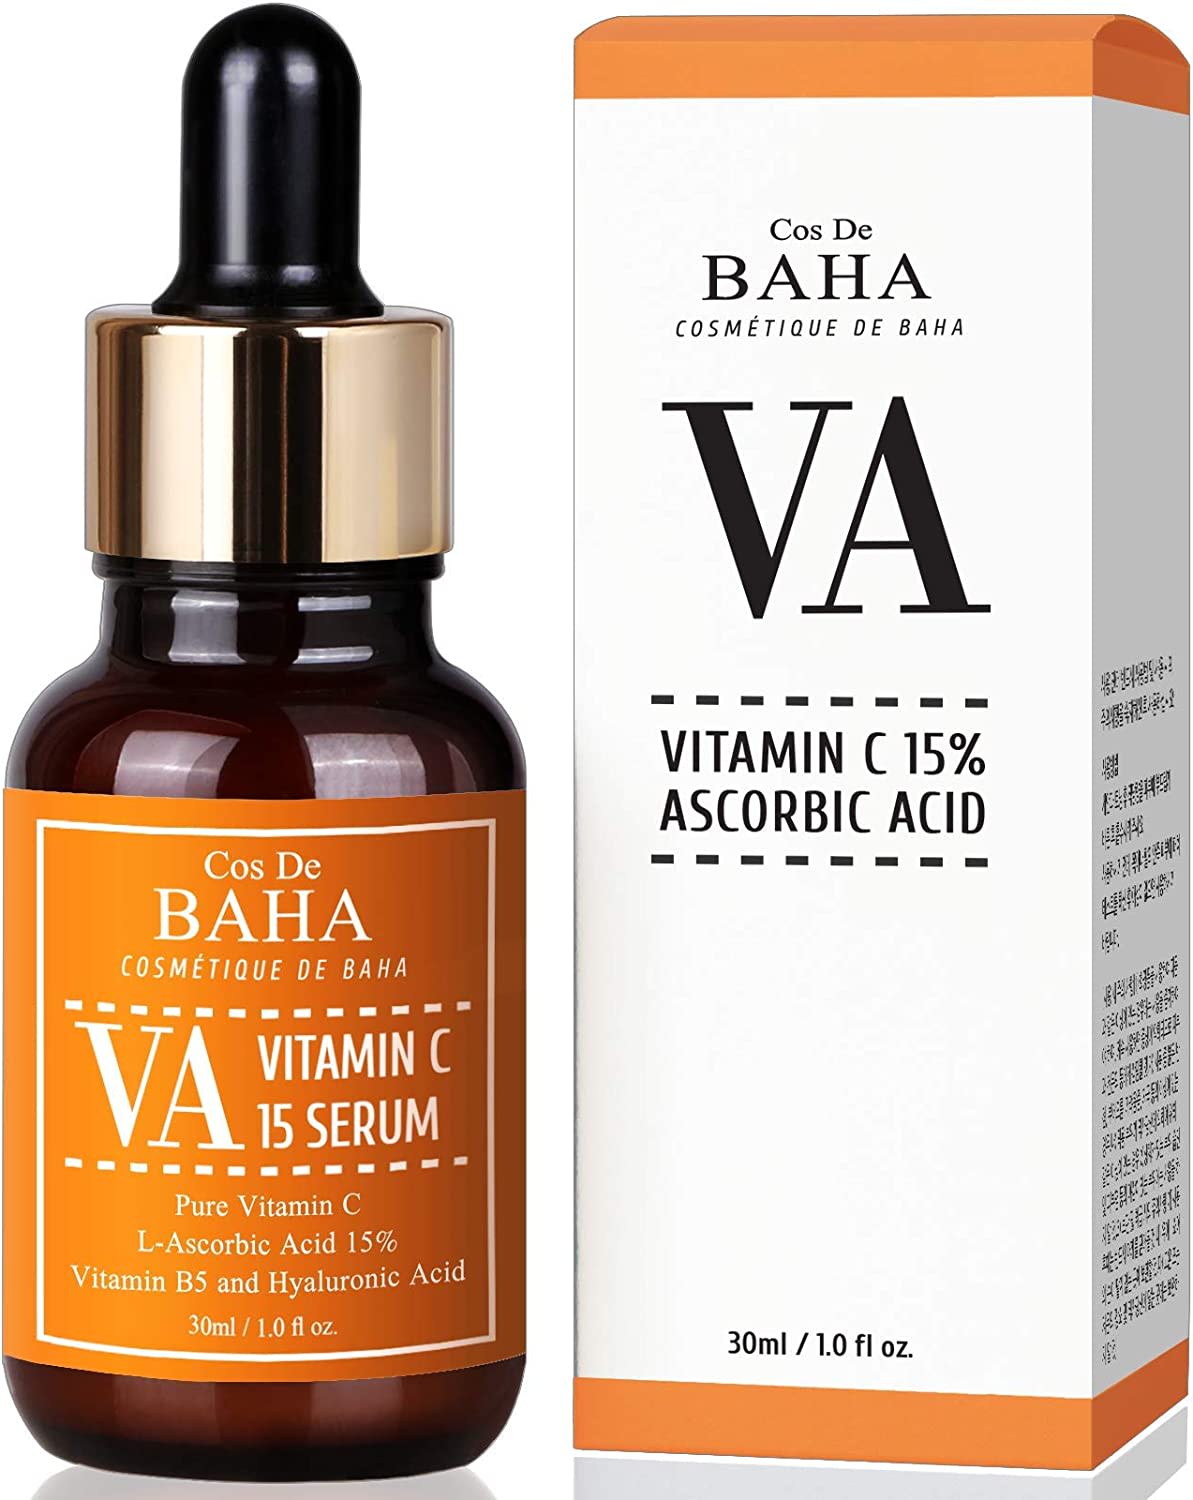 Cos De BAHA Real Vitamin C Serum